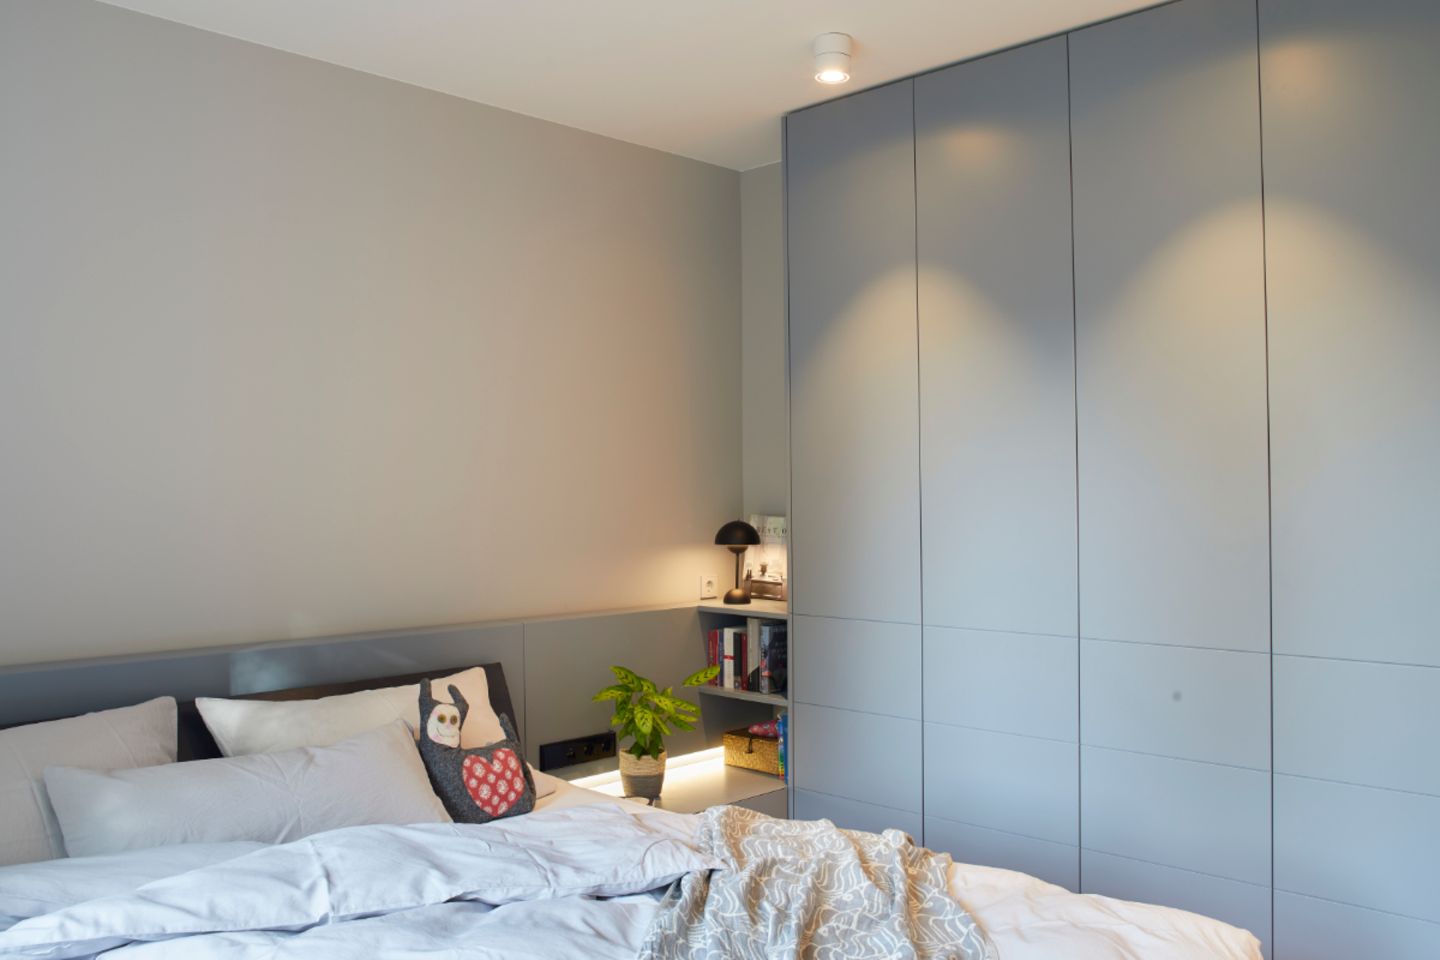 Elternschlafzimmer mit graublauem Einbauschrank und grauer Wand